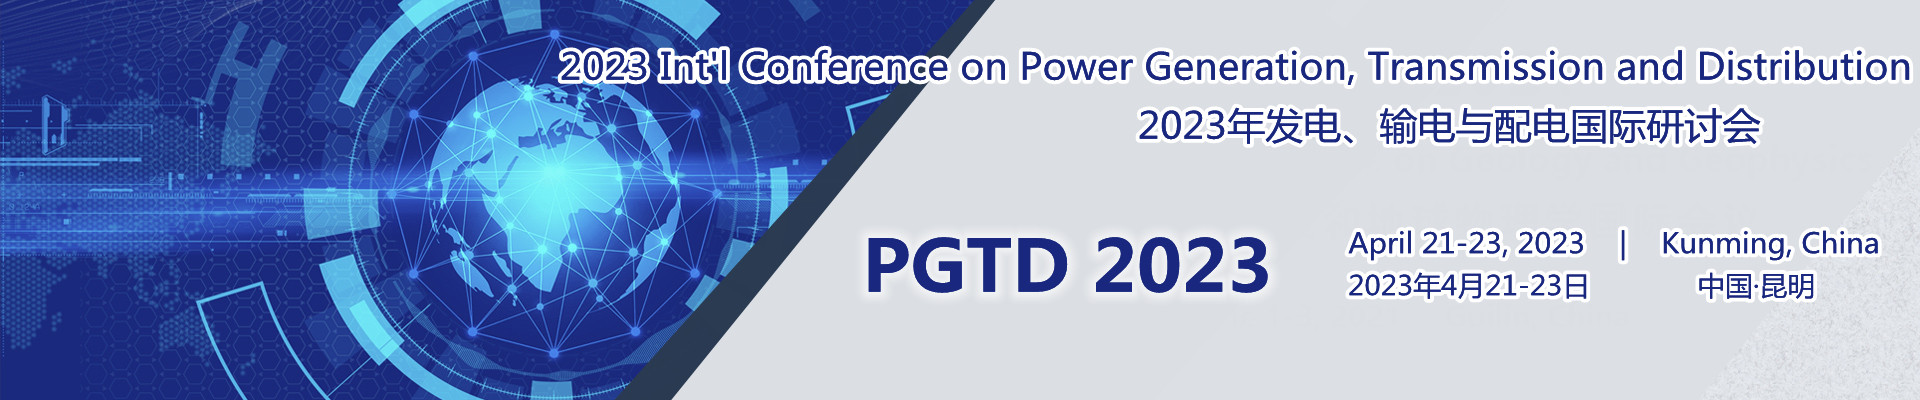 2023年发电、输电与配电国际研讨会(PGTD 2023)